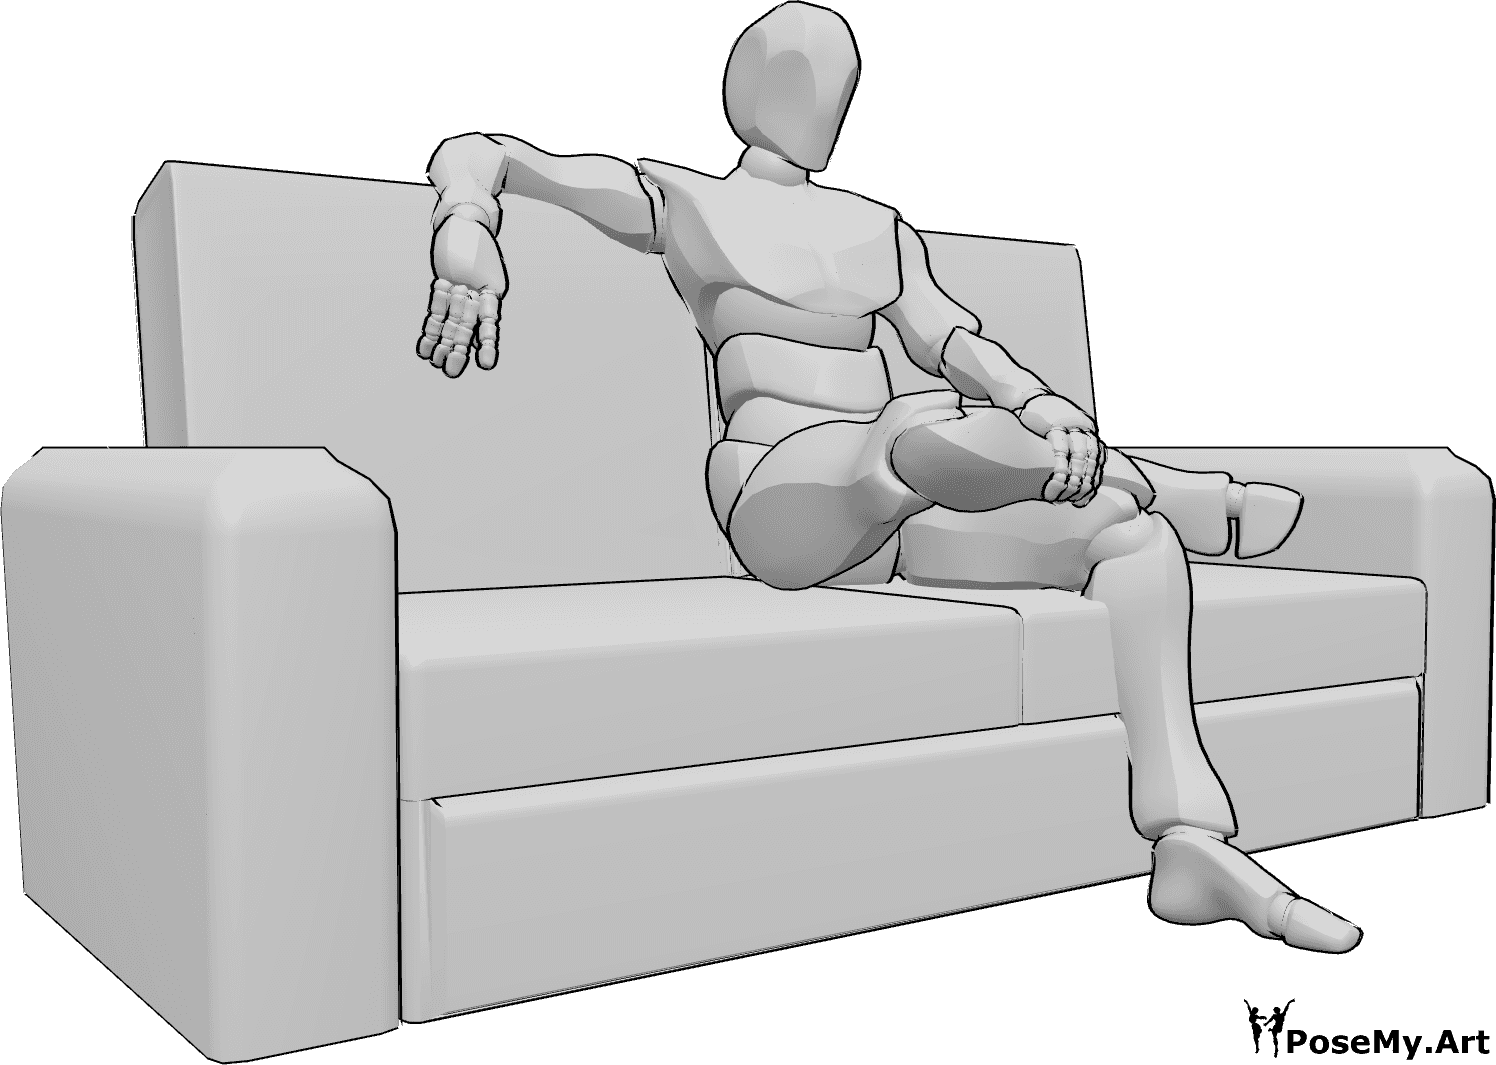 Referência de poses- Postura sentada com as pernas cruzadas - O homem está sentado no sofá com as pernas cruzadas, segurando a perna com a mão esquerda e apoiando a mão direita em cima do sofá